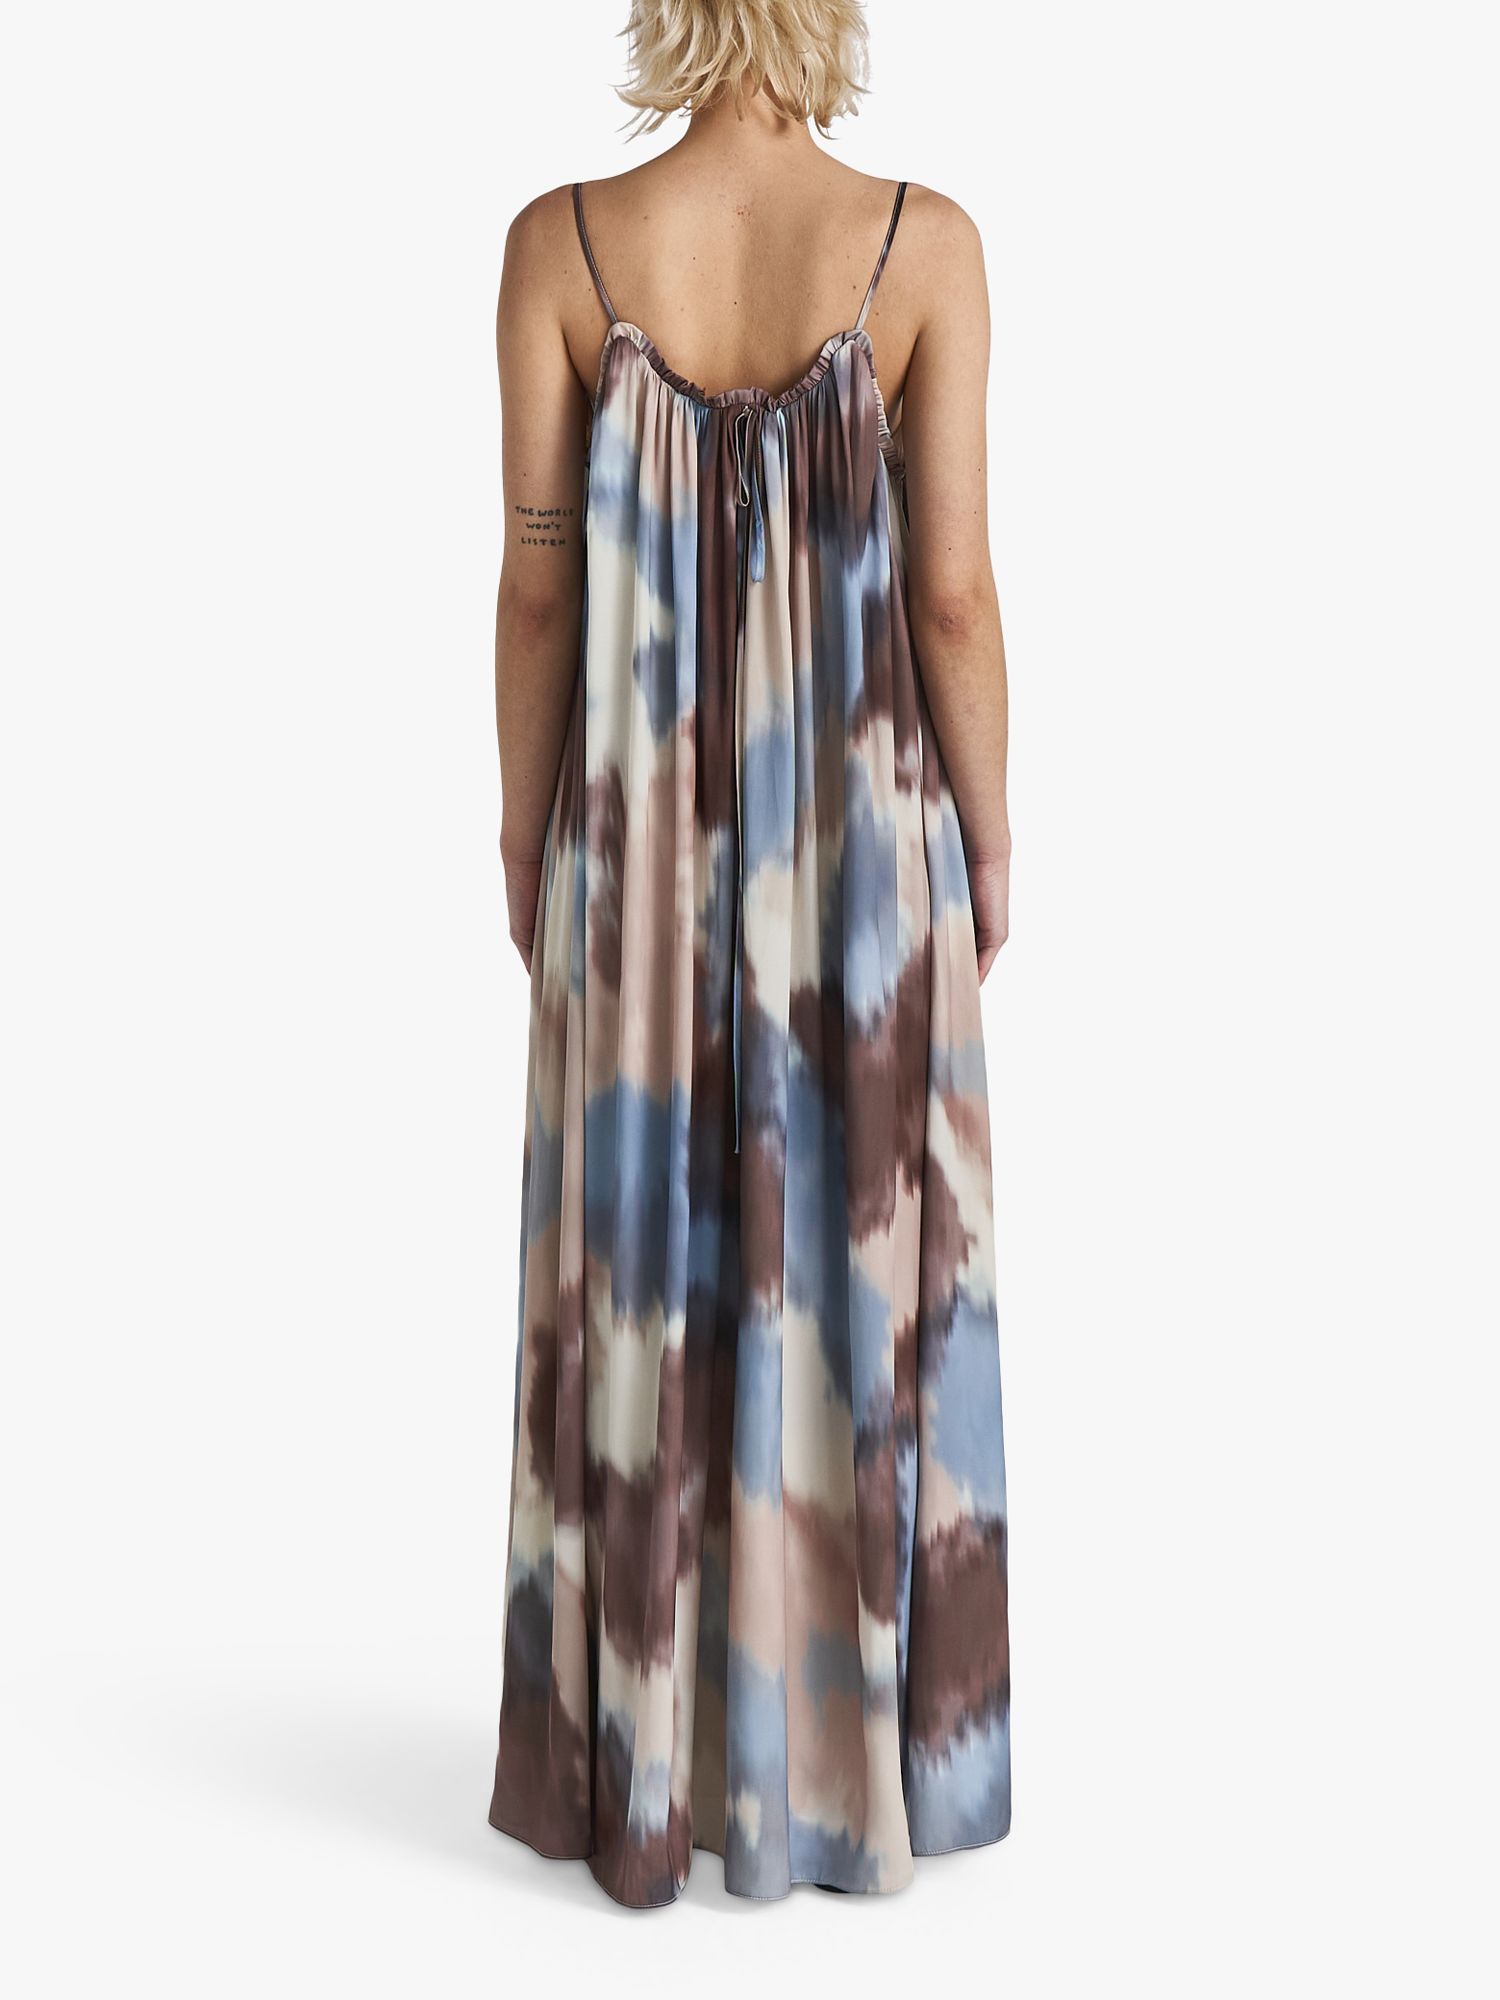 Twist & Tango Abstract Print Summer Breezy Drape Maxi Dress, Multi, 8